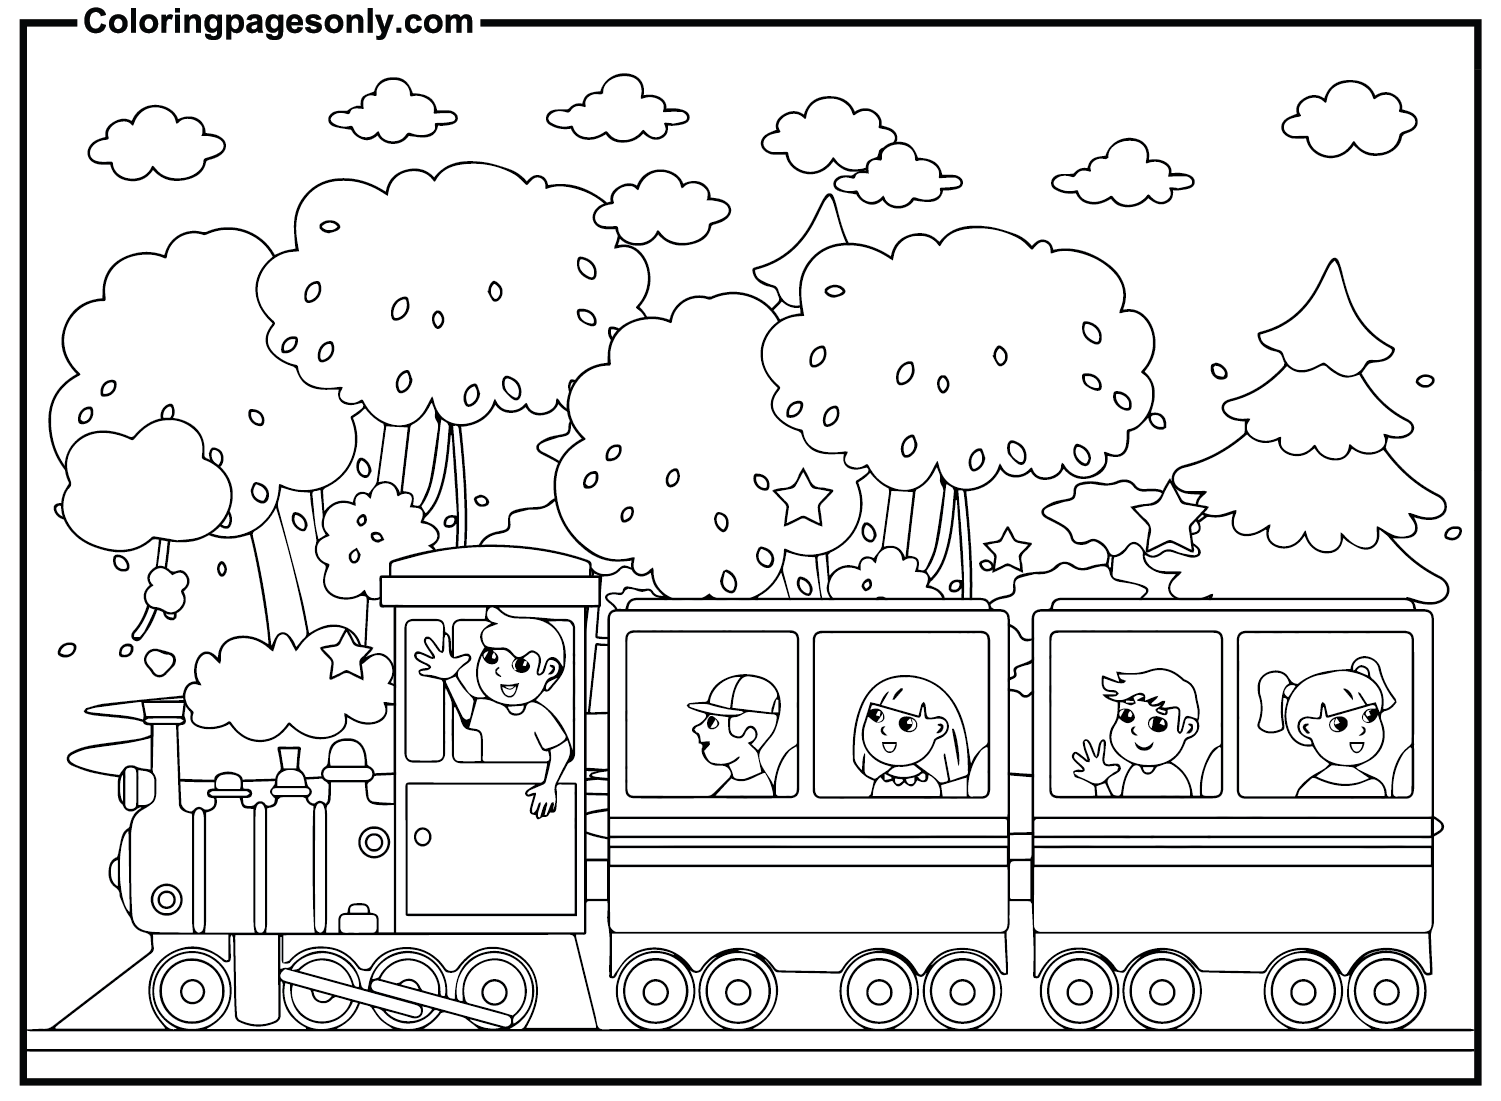 Niños en el tren desde el tren.